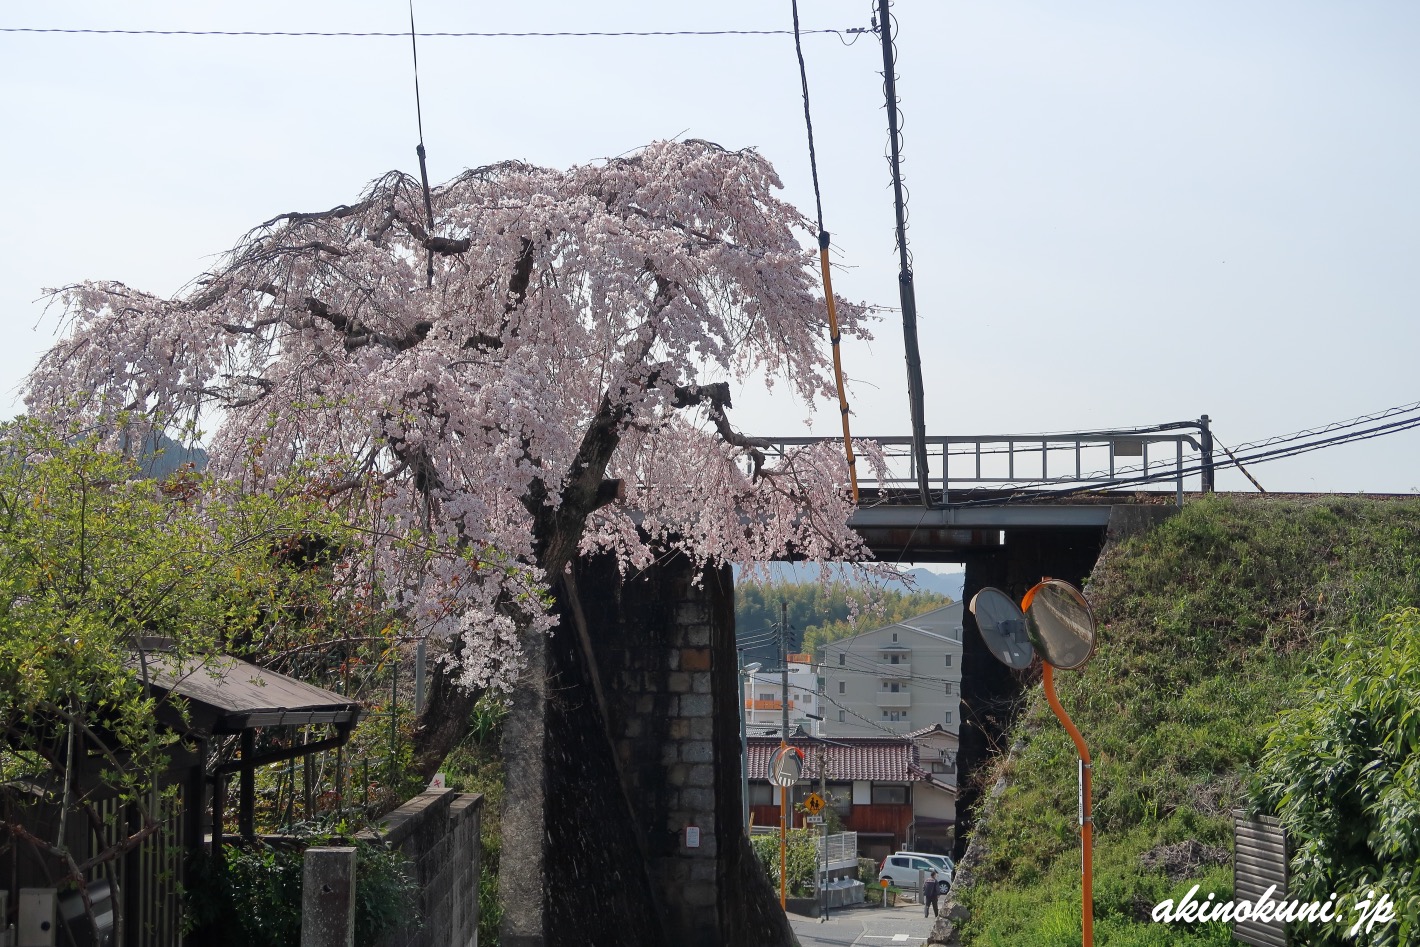 戸坂 芸備線陸橋そばの桜